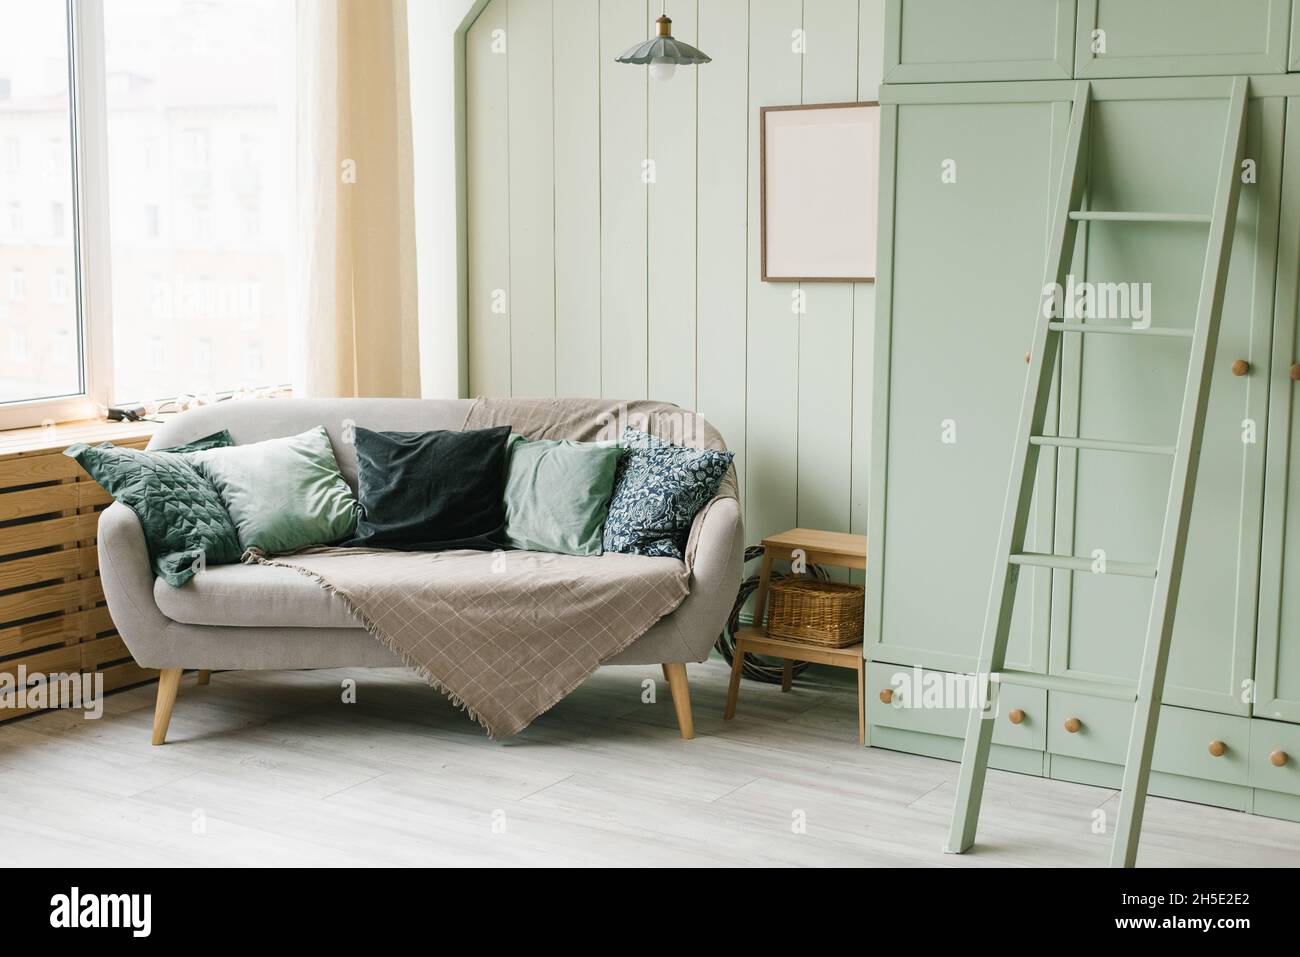 Décoration scandinave élégante dans la chambre, couleur menthe.Canapé et  armoire avec escalier Photo Stock - Alamy